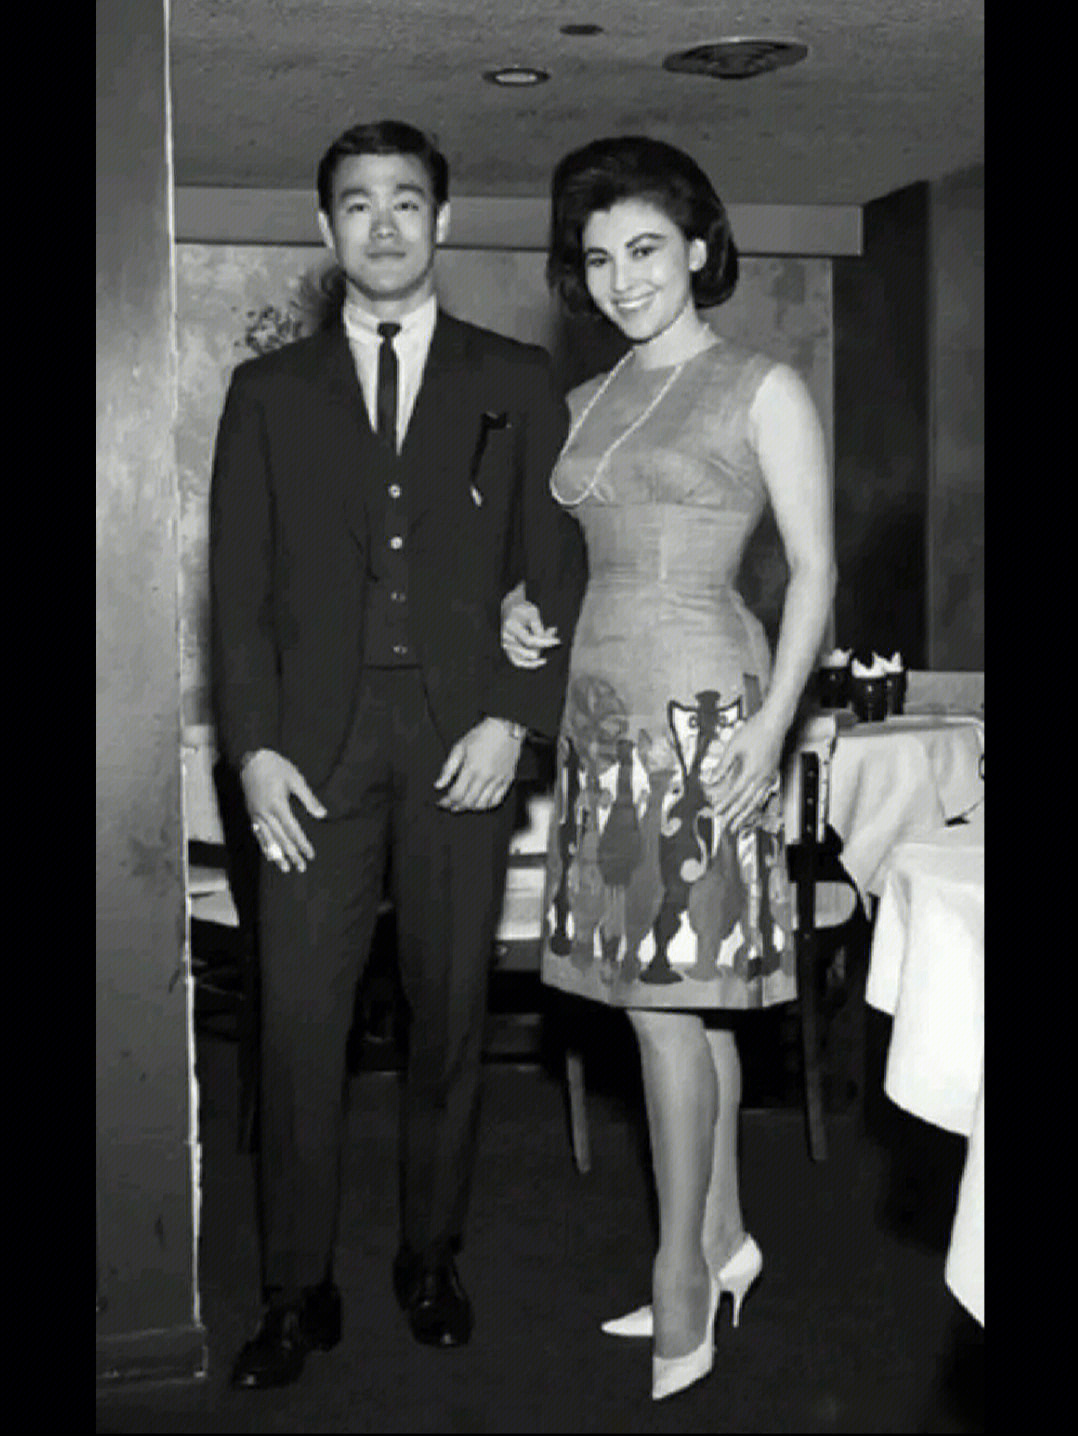 照片拍摄于上世纪50年代,当时的李小龙在美国还未成名,他旁边的女士才